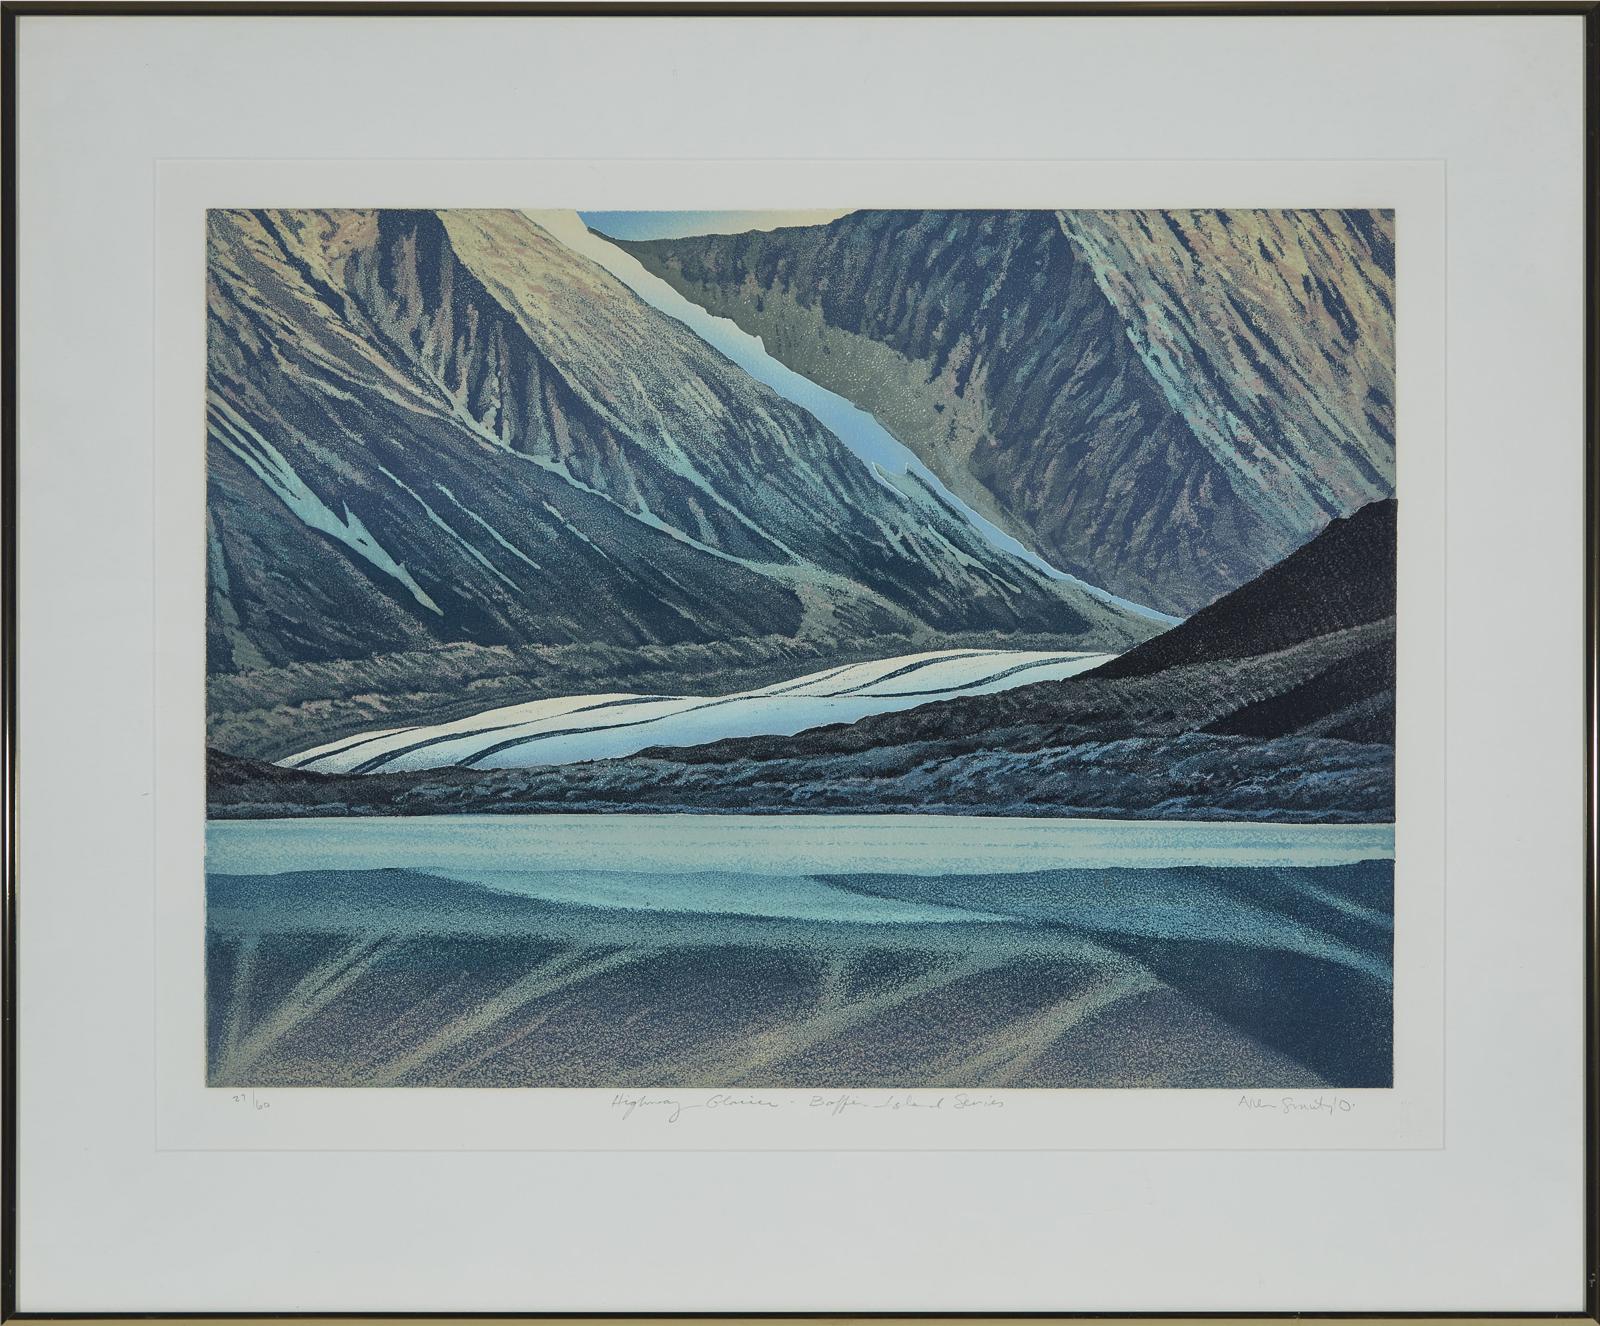 Allen Harry Smutylo (1946) - Highway Glacier - Baffin Island Series